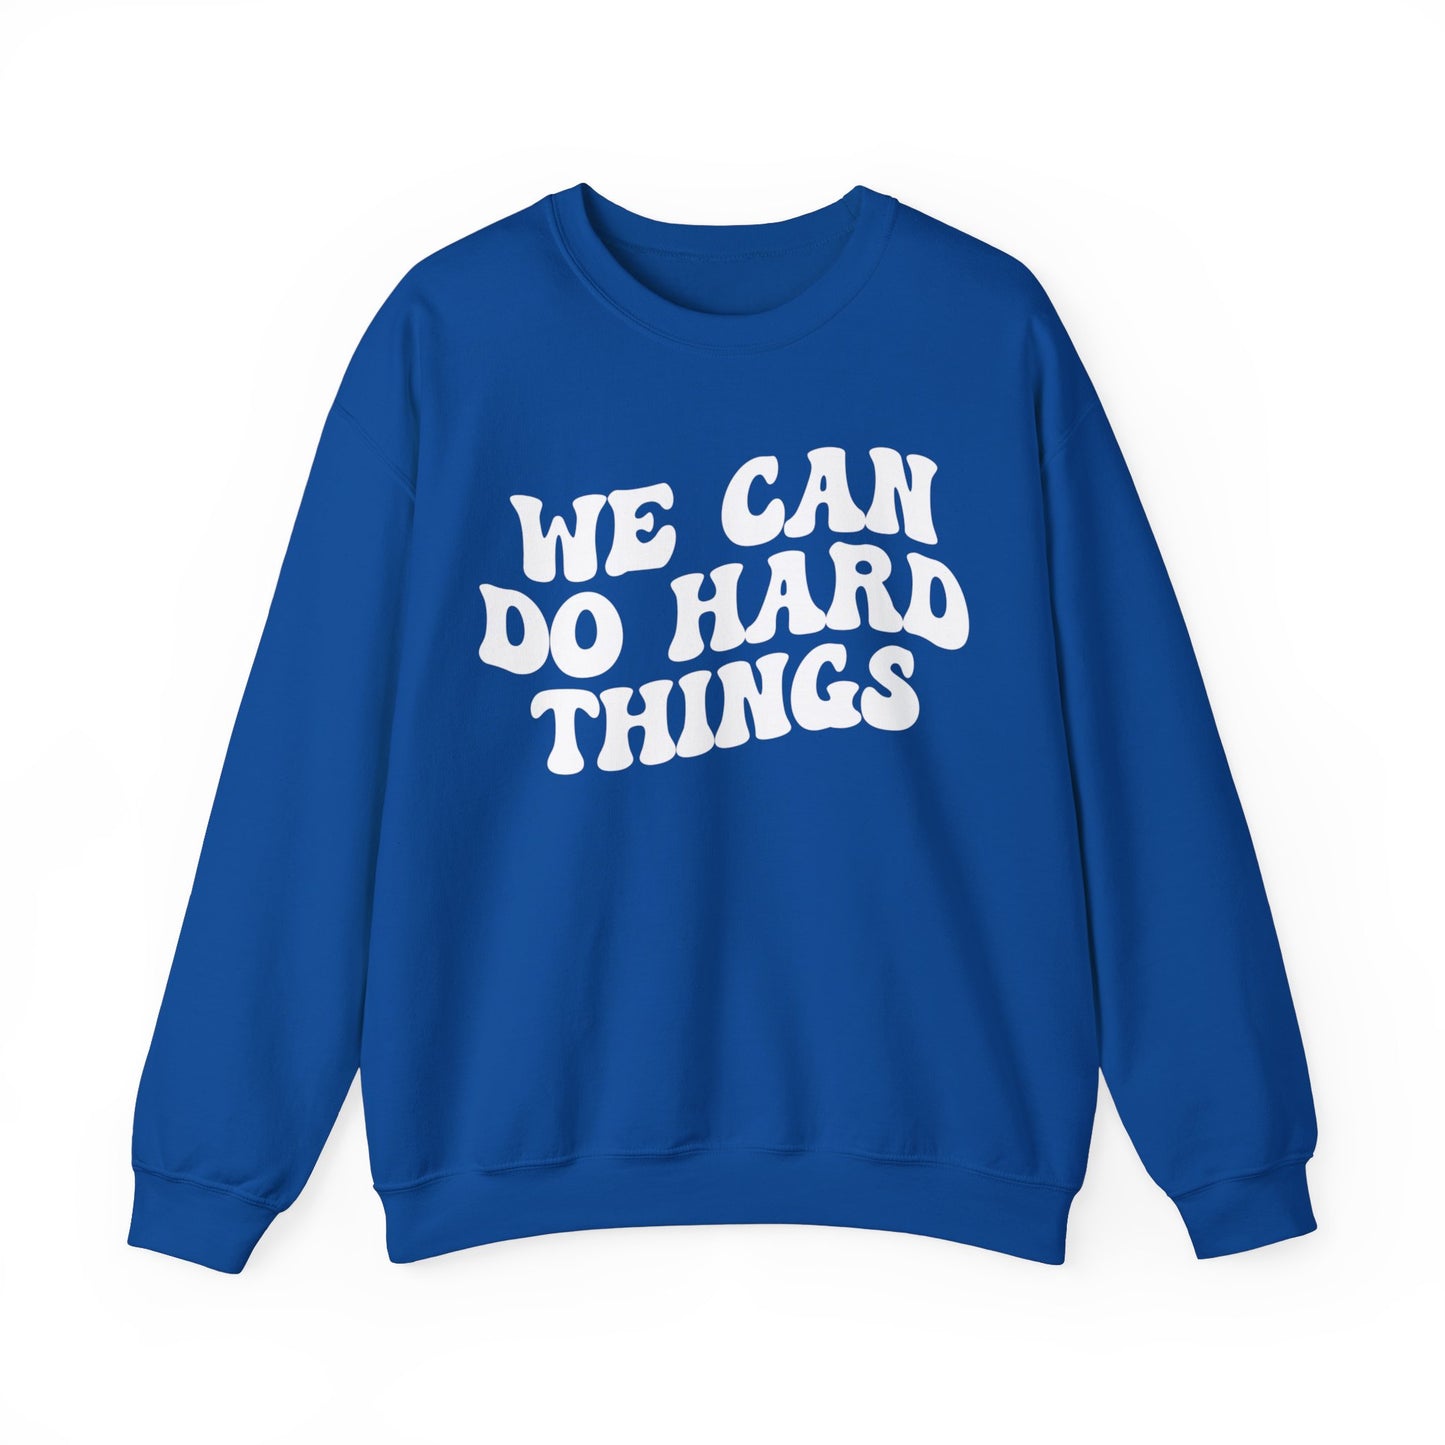 We Can Do Hard Things Sweatshirt, Take a Risk Sweatshirt, Strive Hard, State Testing Sweatshirt, Inspirational Sweatshirt for Women, S1468